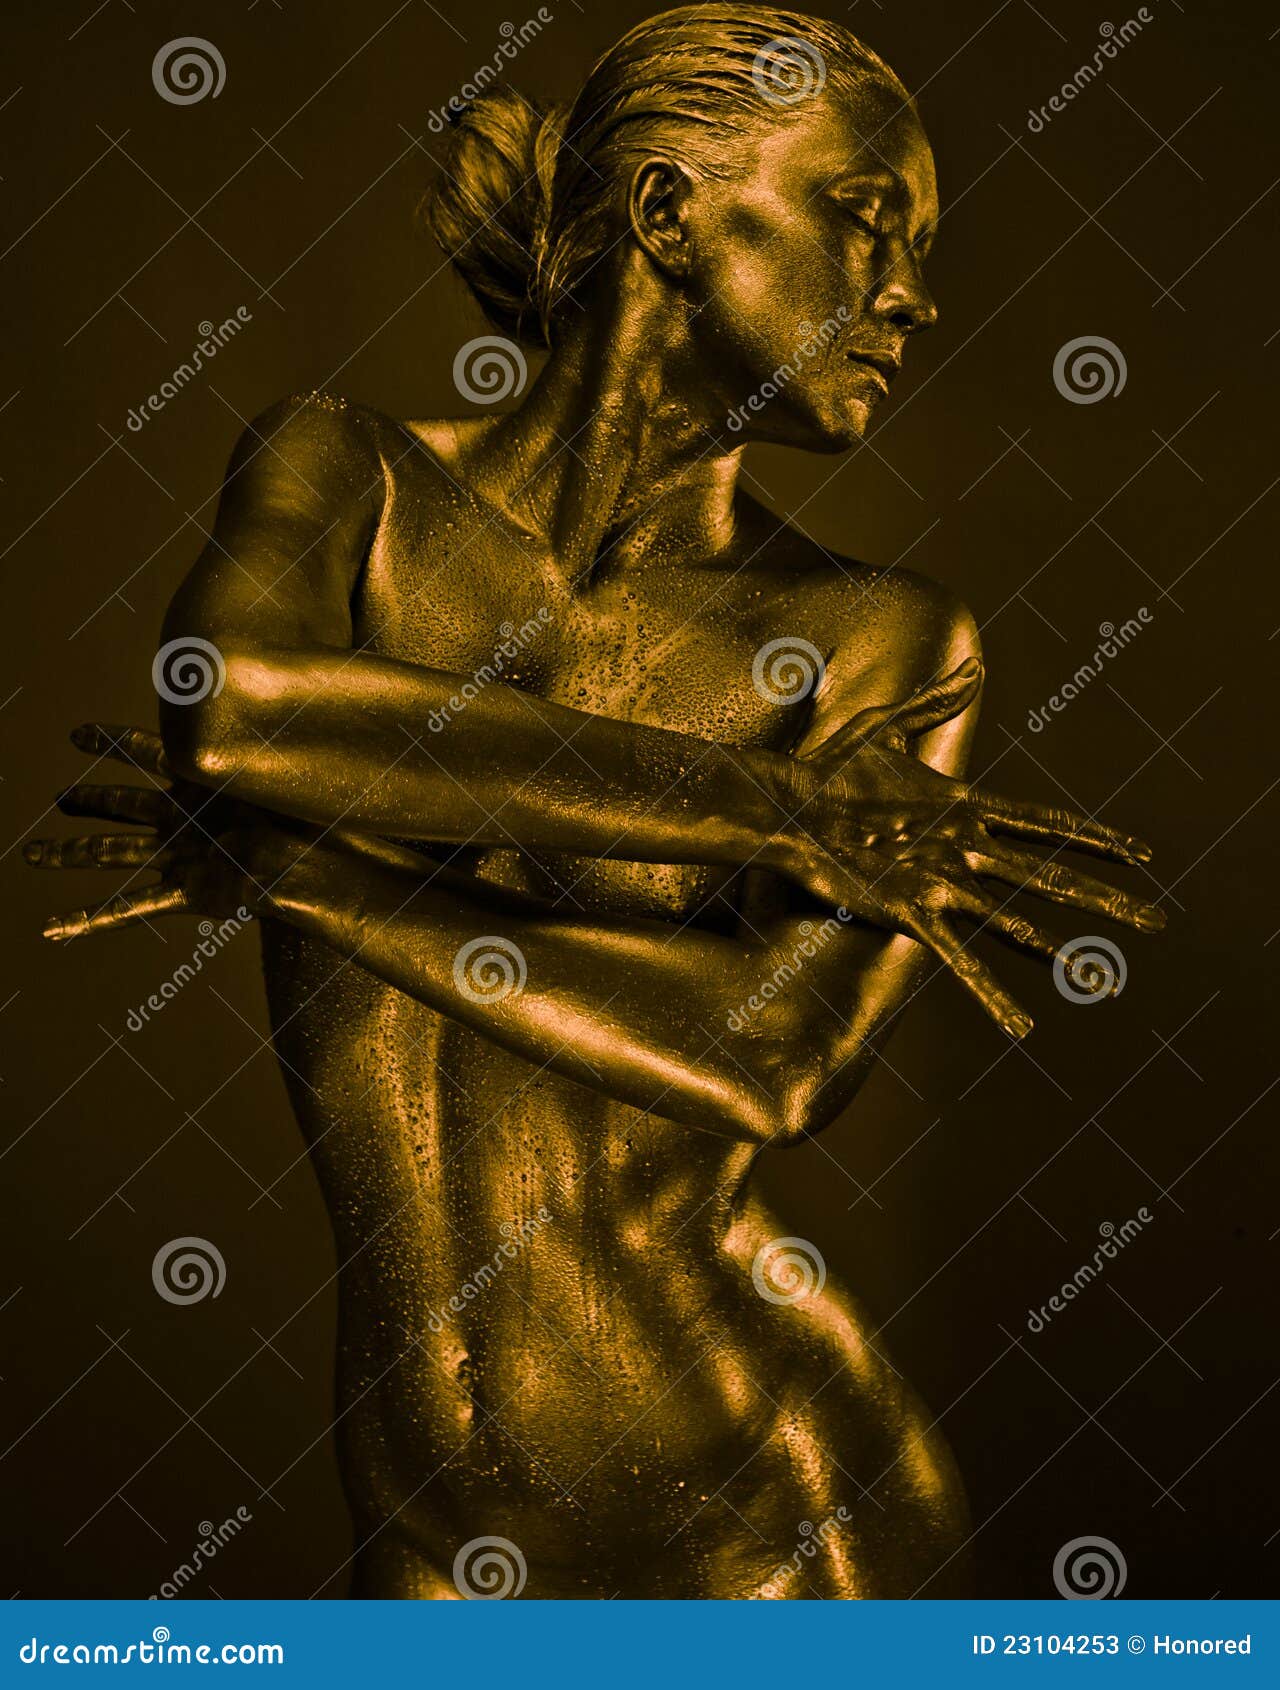 Голое тело матери. Золотая скульптура женщины. Женщина из жидкого металла. Скульптура женского тела.